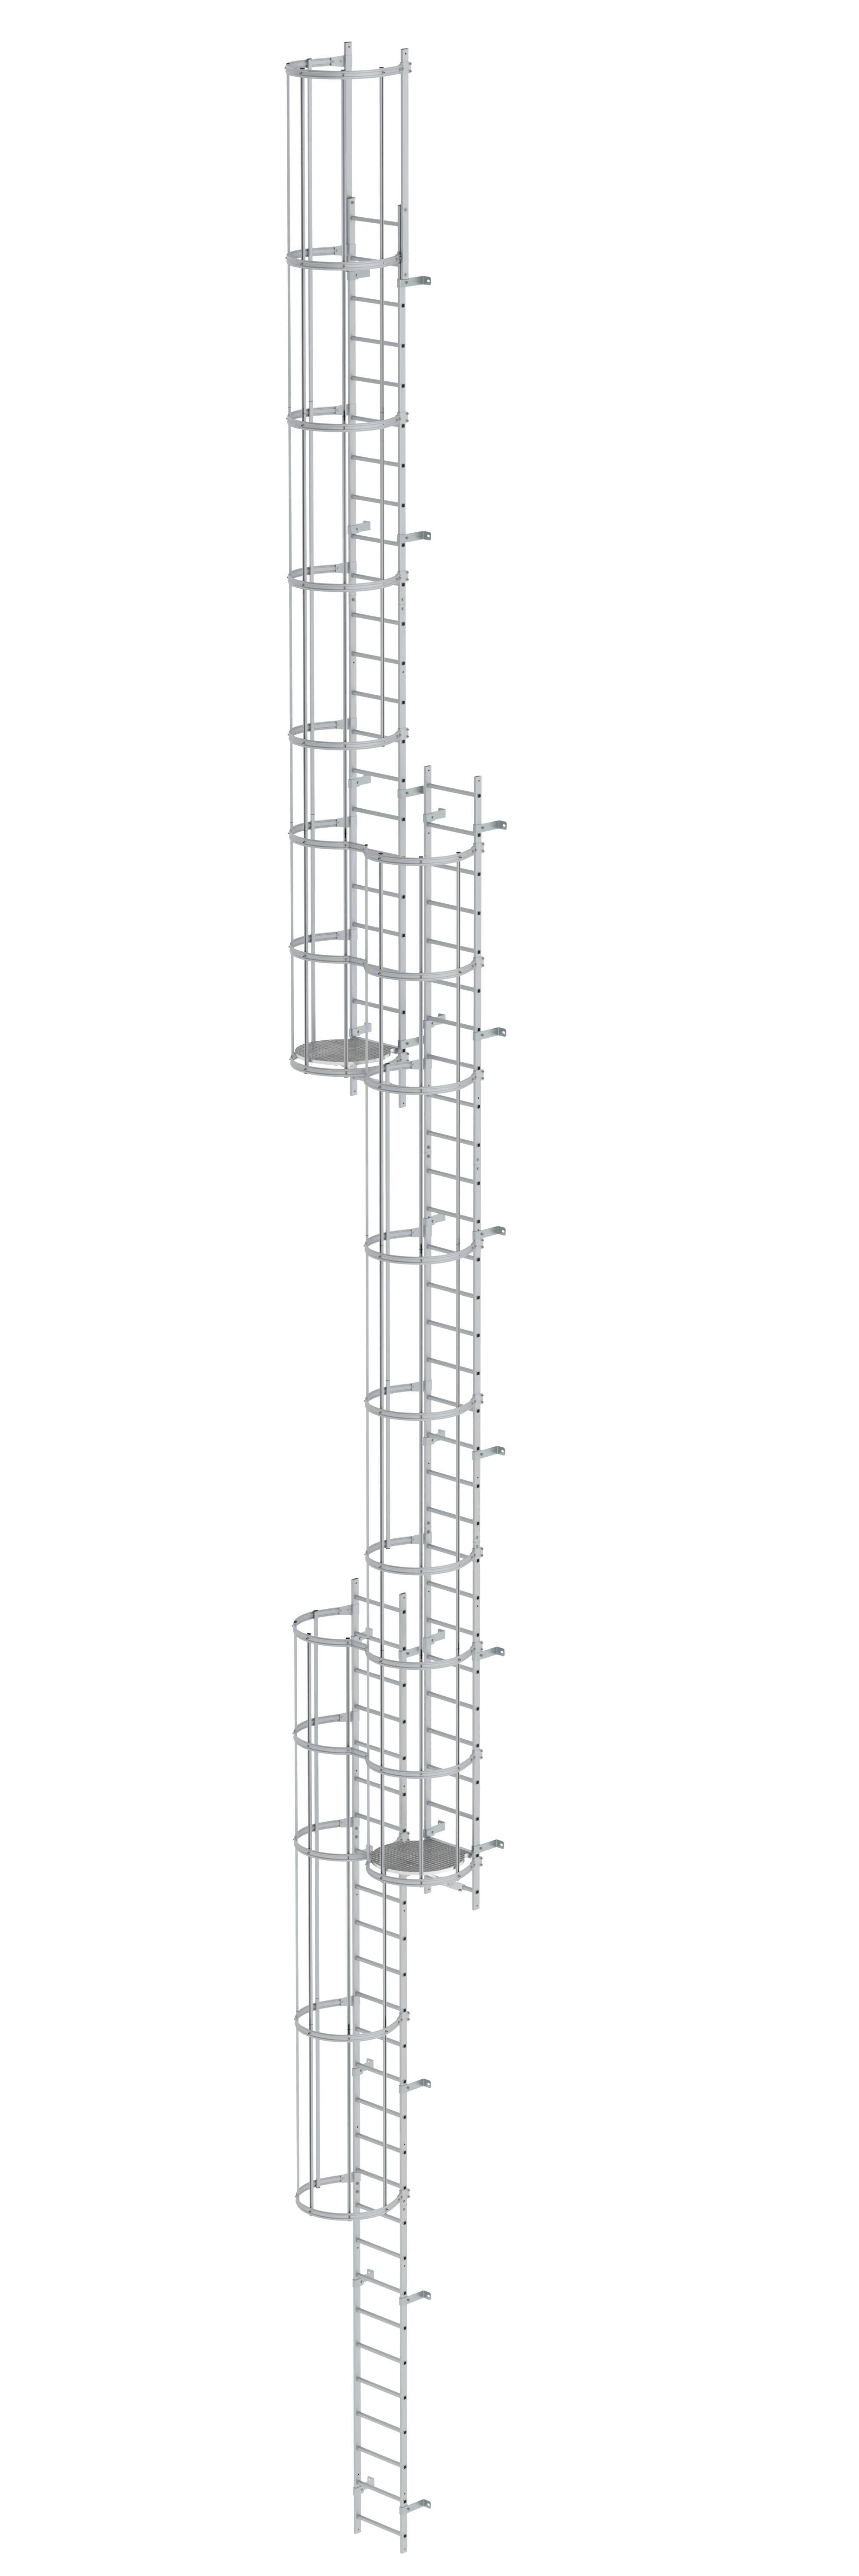 Mehrzügige Steigleiter mit Rückenschutz (Notleiter) Aluminium eloxiert 18,84m